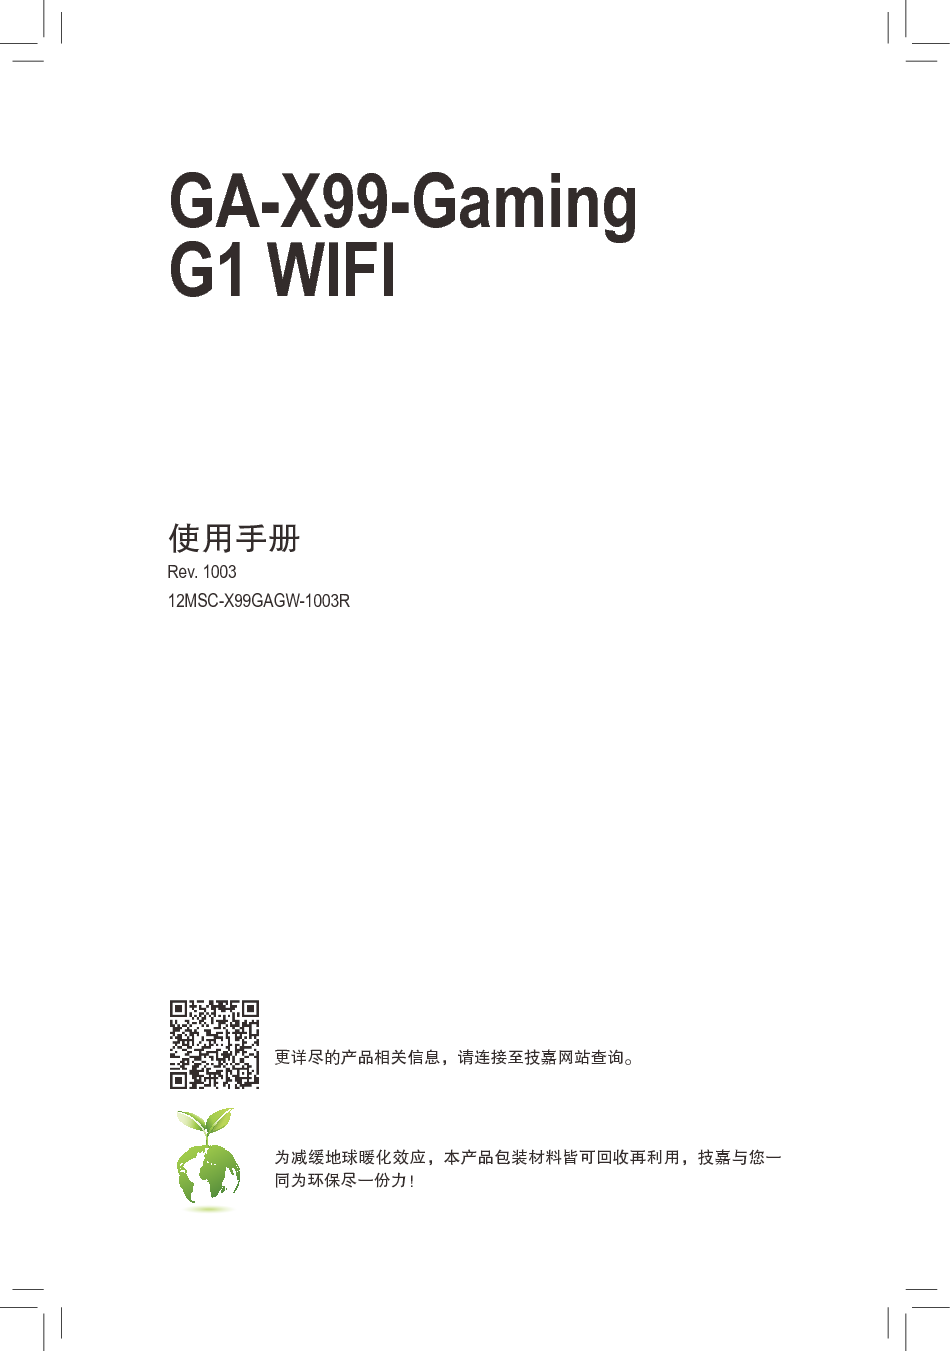 技嘉 Gigabyte GA-X99-Gaming G1 WIFI 使用手册 封面